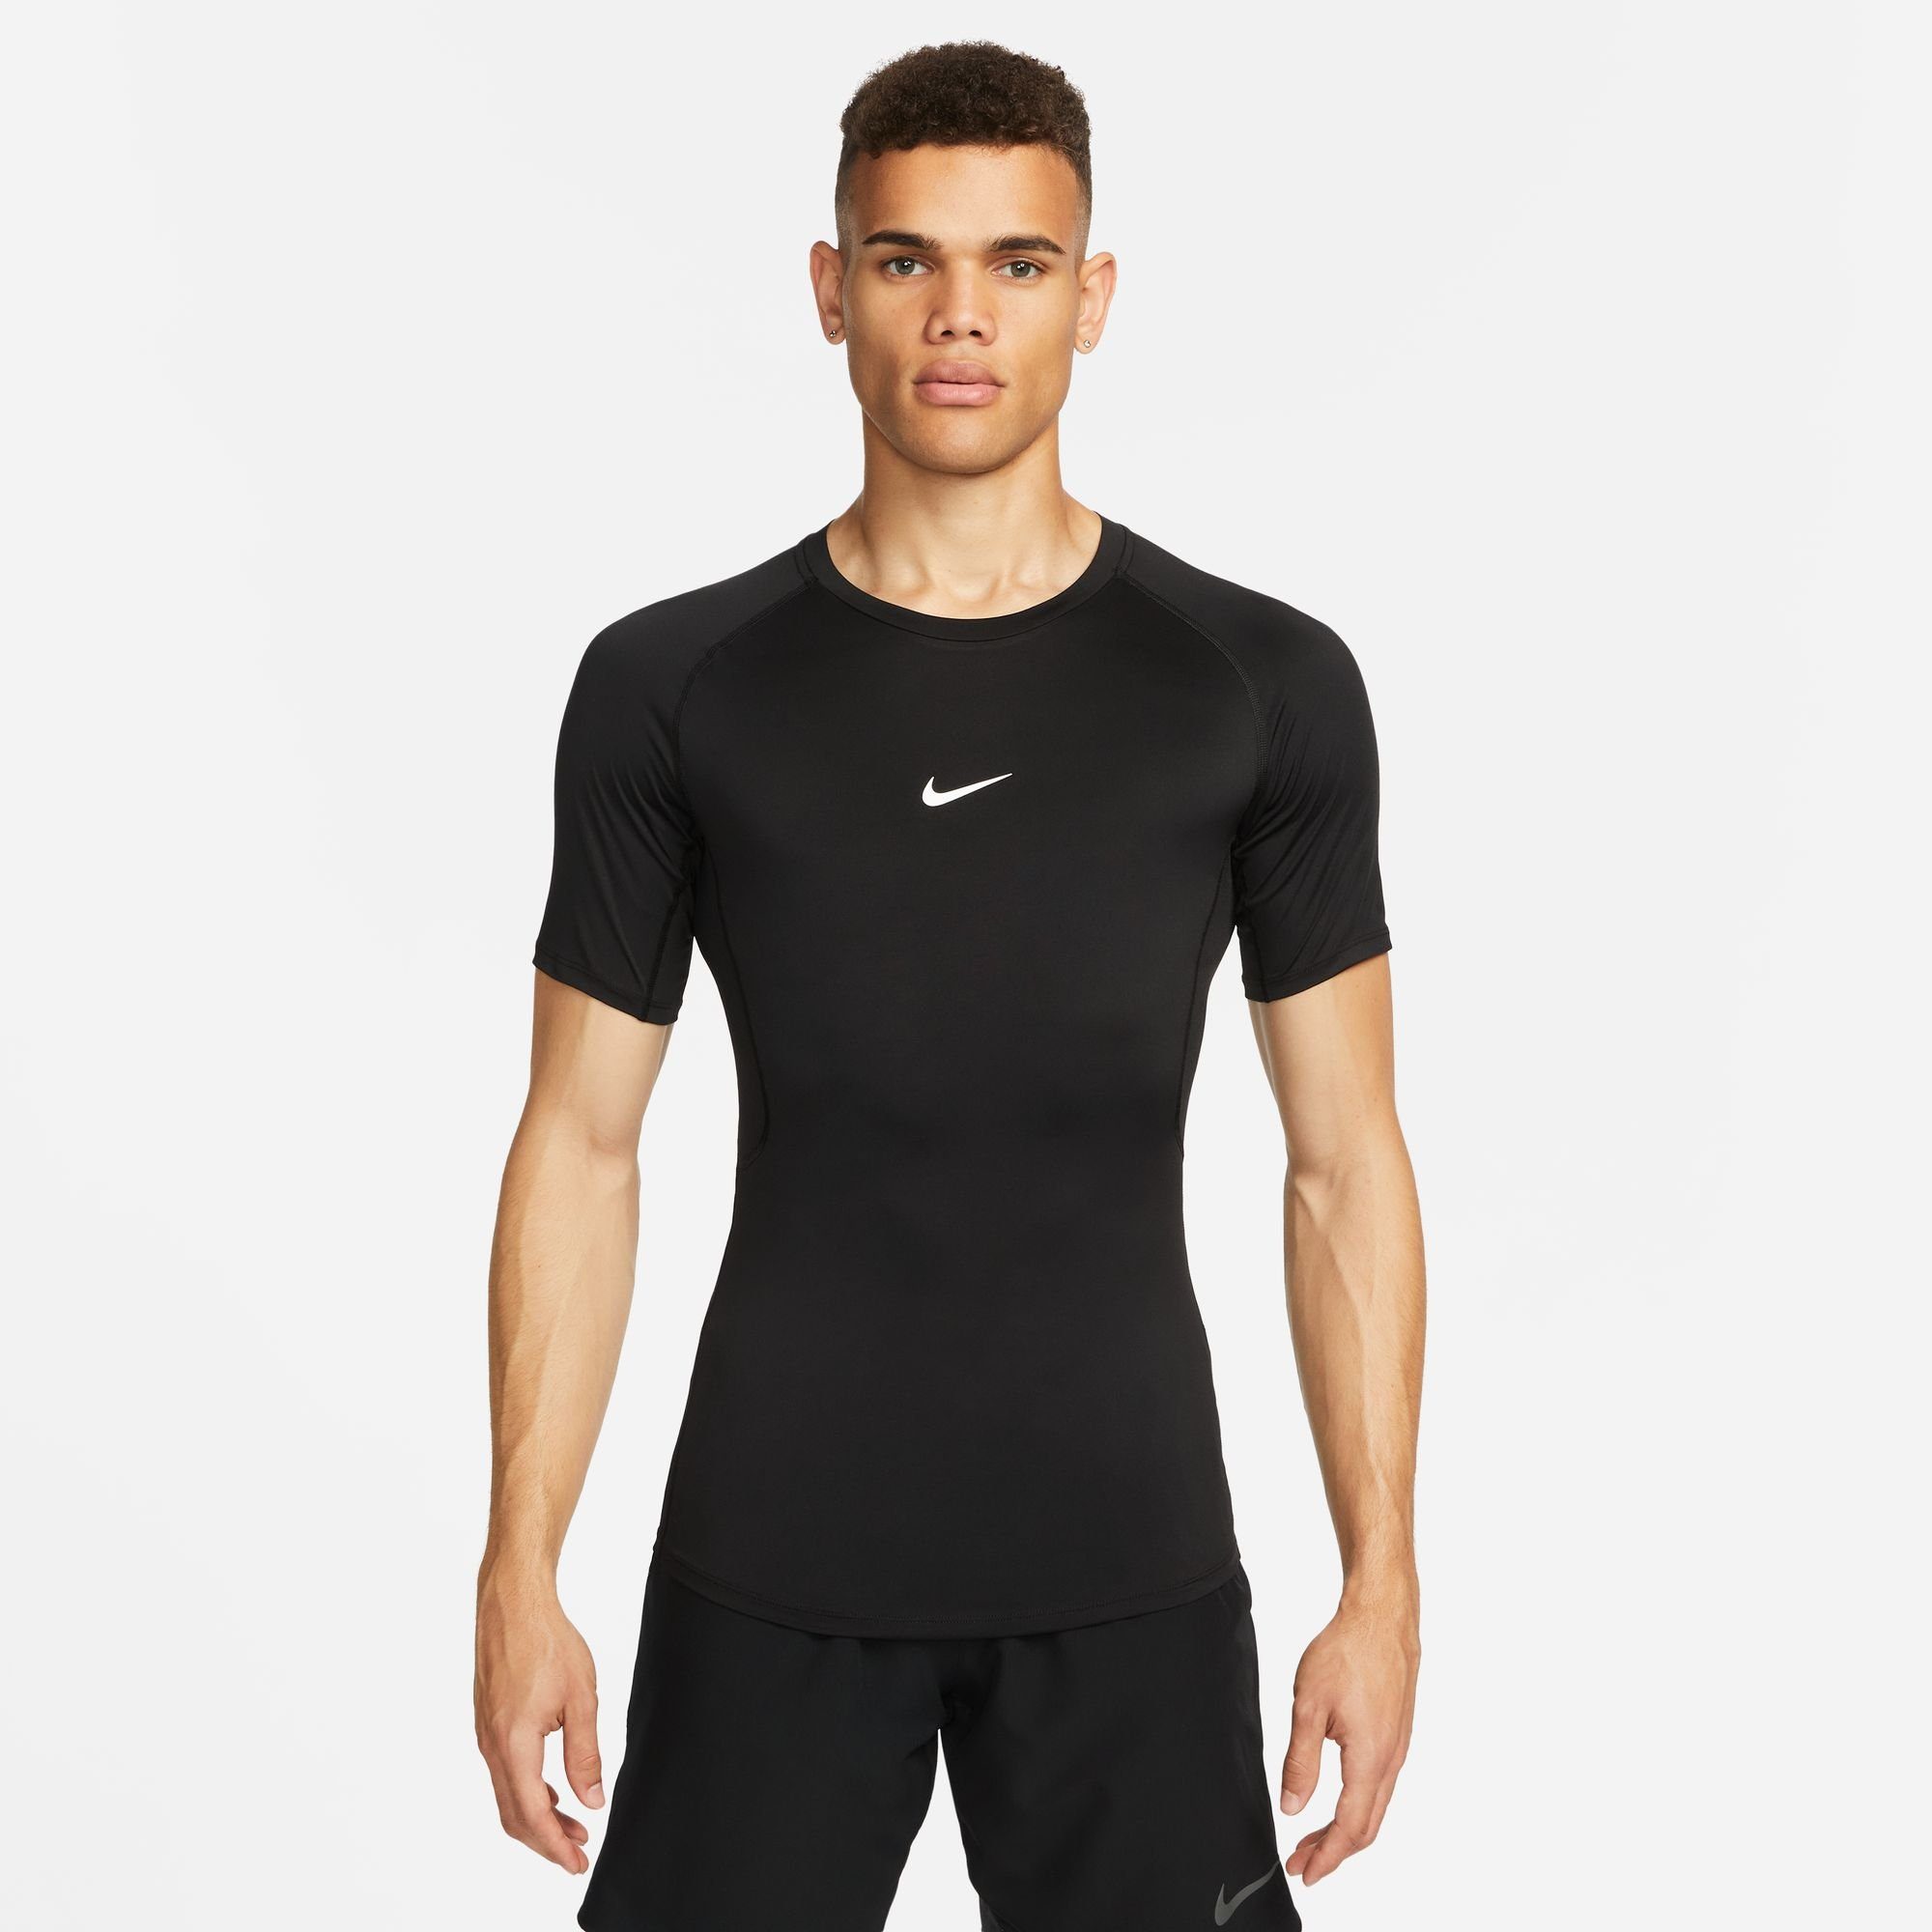 TIGHT TOP Nike Trainingsshirt DRI-FIT MEN'S PRO SHORT-SLEEVE